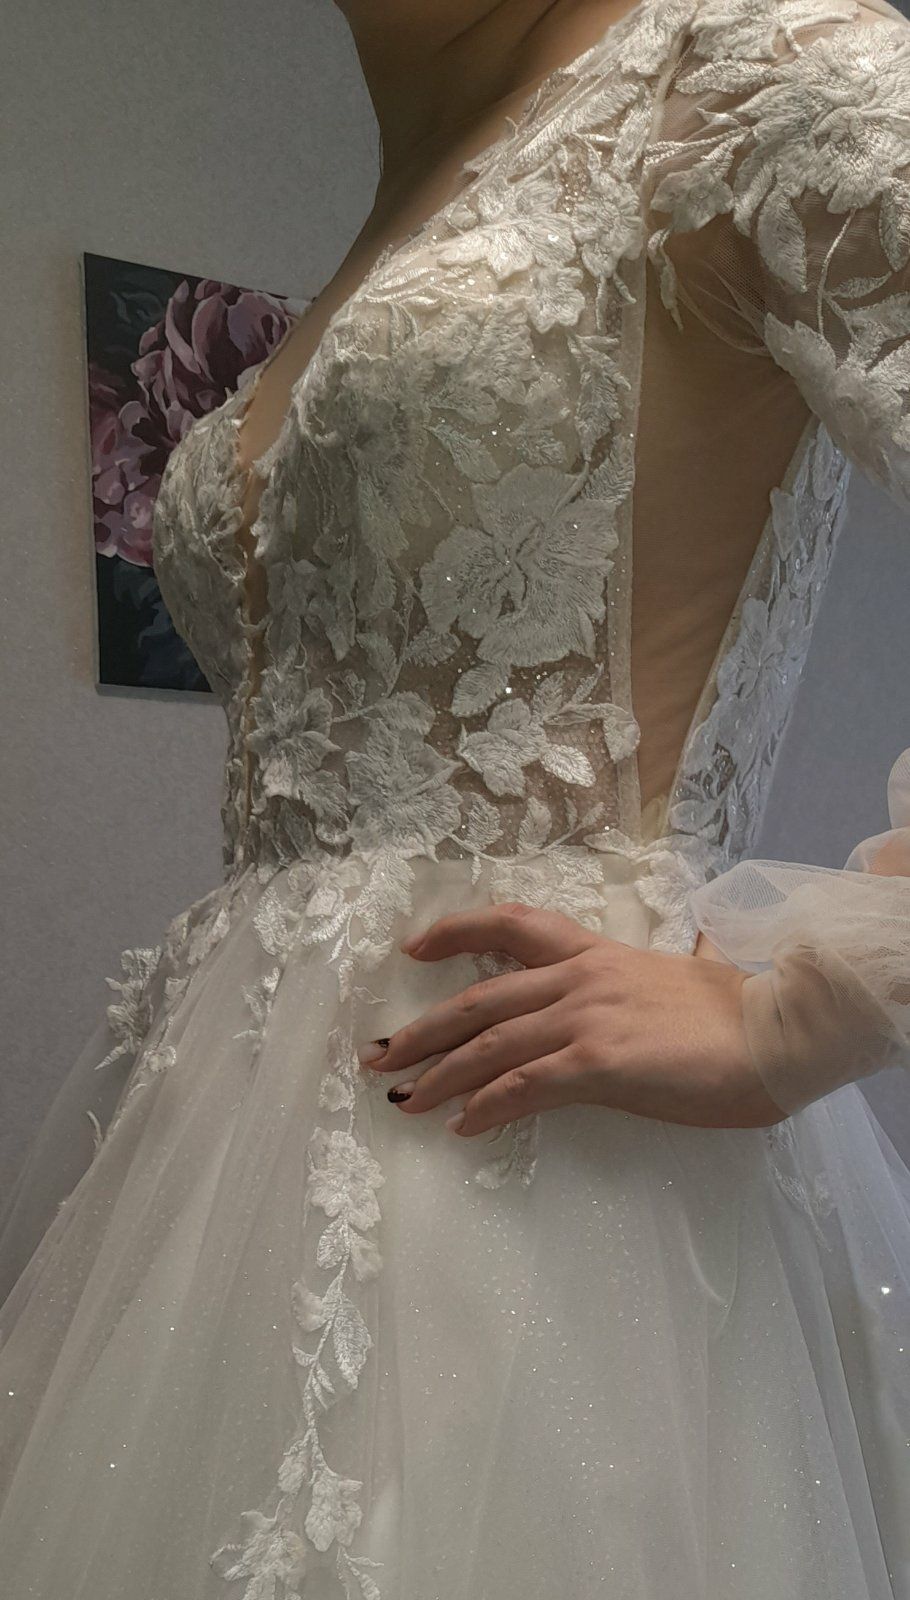 Вишукана весільна сукня